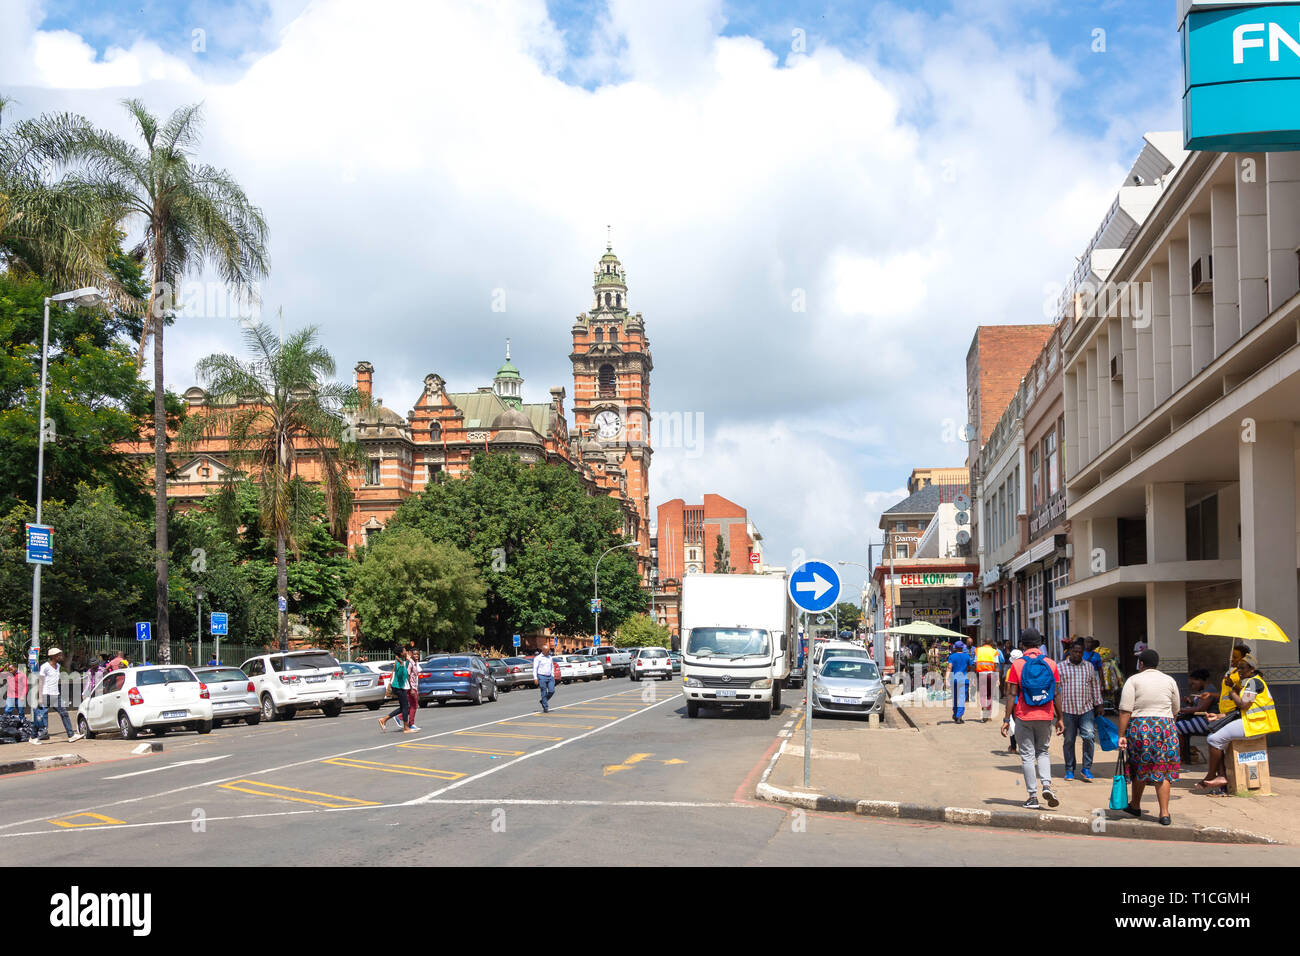 L'Hôtel de ville de Pietermaritzburg, Church Street, Pietermaritzburg, KwaZulu-Natal, Afrique du Sud Banque D'Images